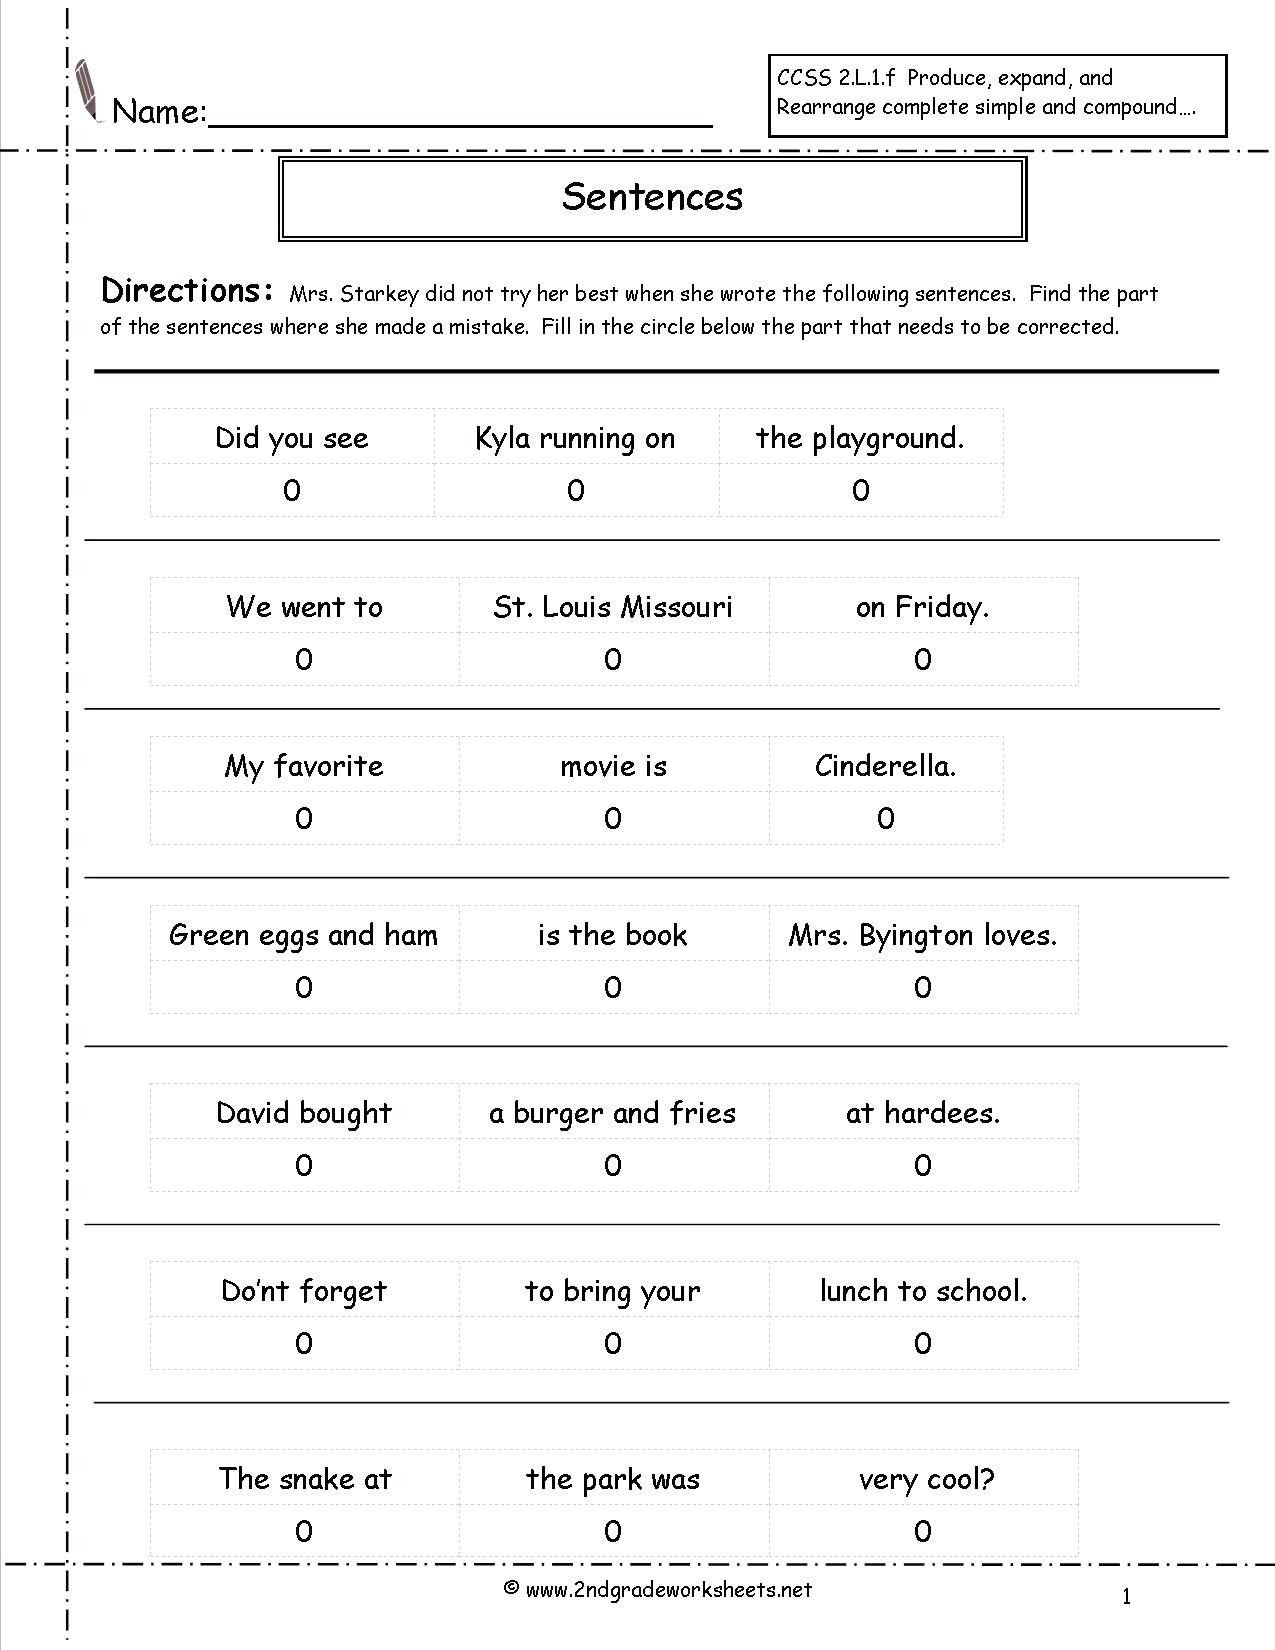 Complete Sentences Worksheets 1st Grade Types Sentences Worksheets to Download Types Of